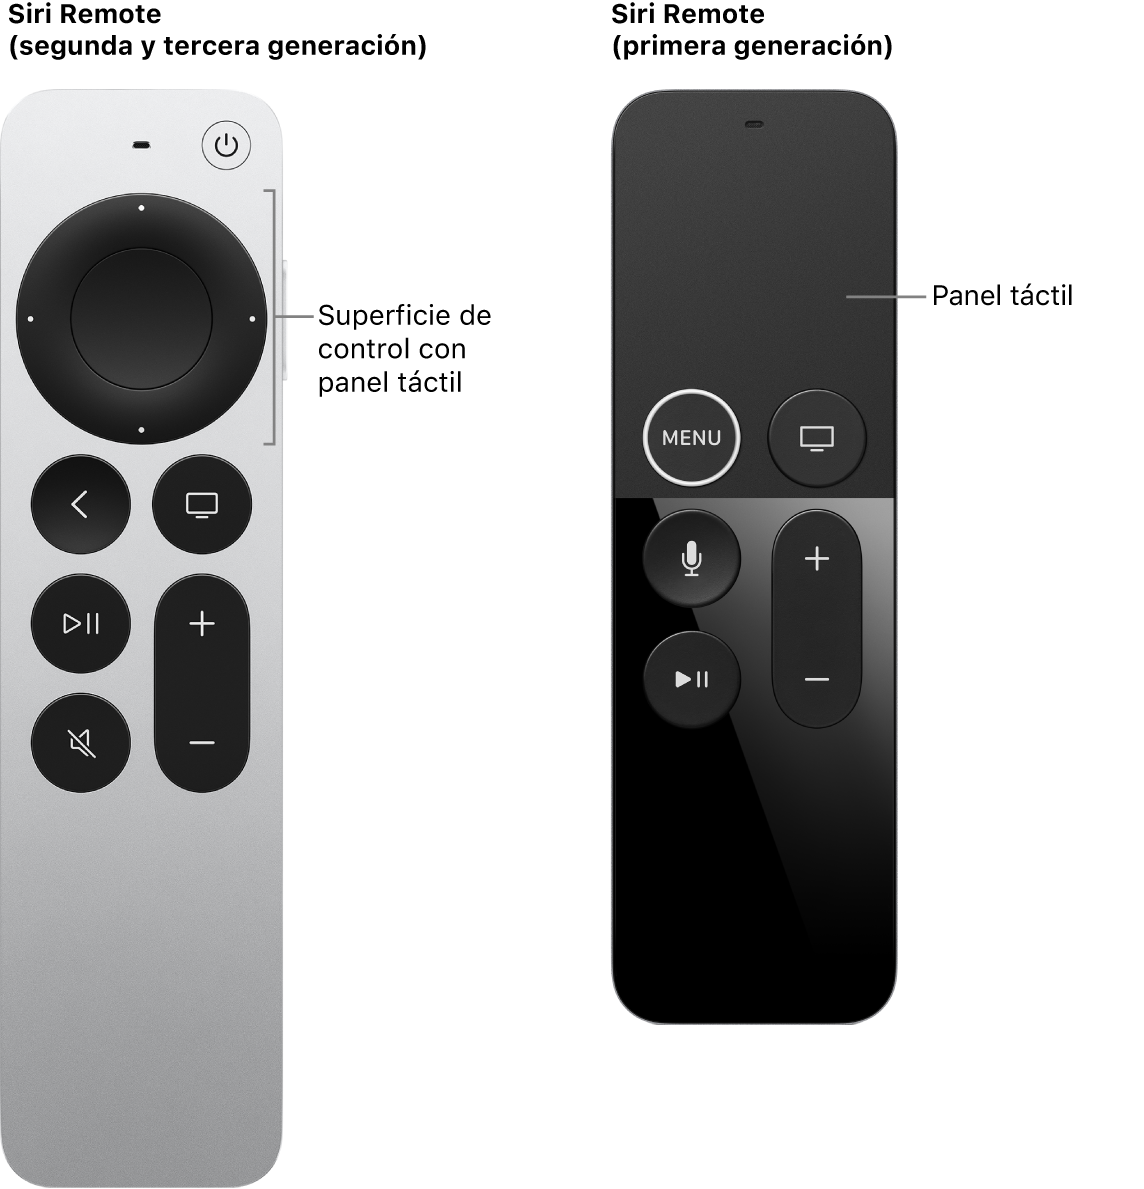 El Siri Remote (segunda y tercera generación) con superficie de control, y el Siri Remote (primera generación) con superficie táctil